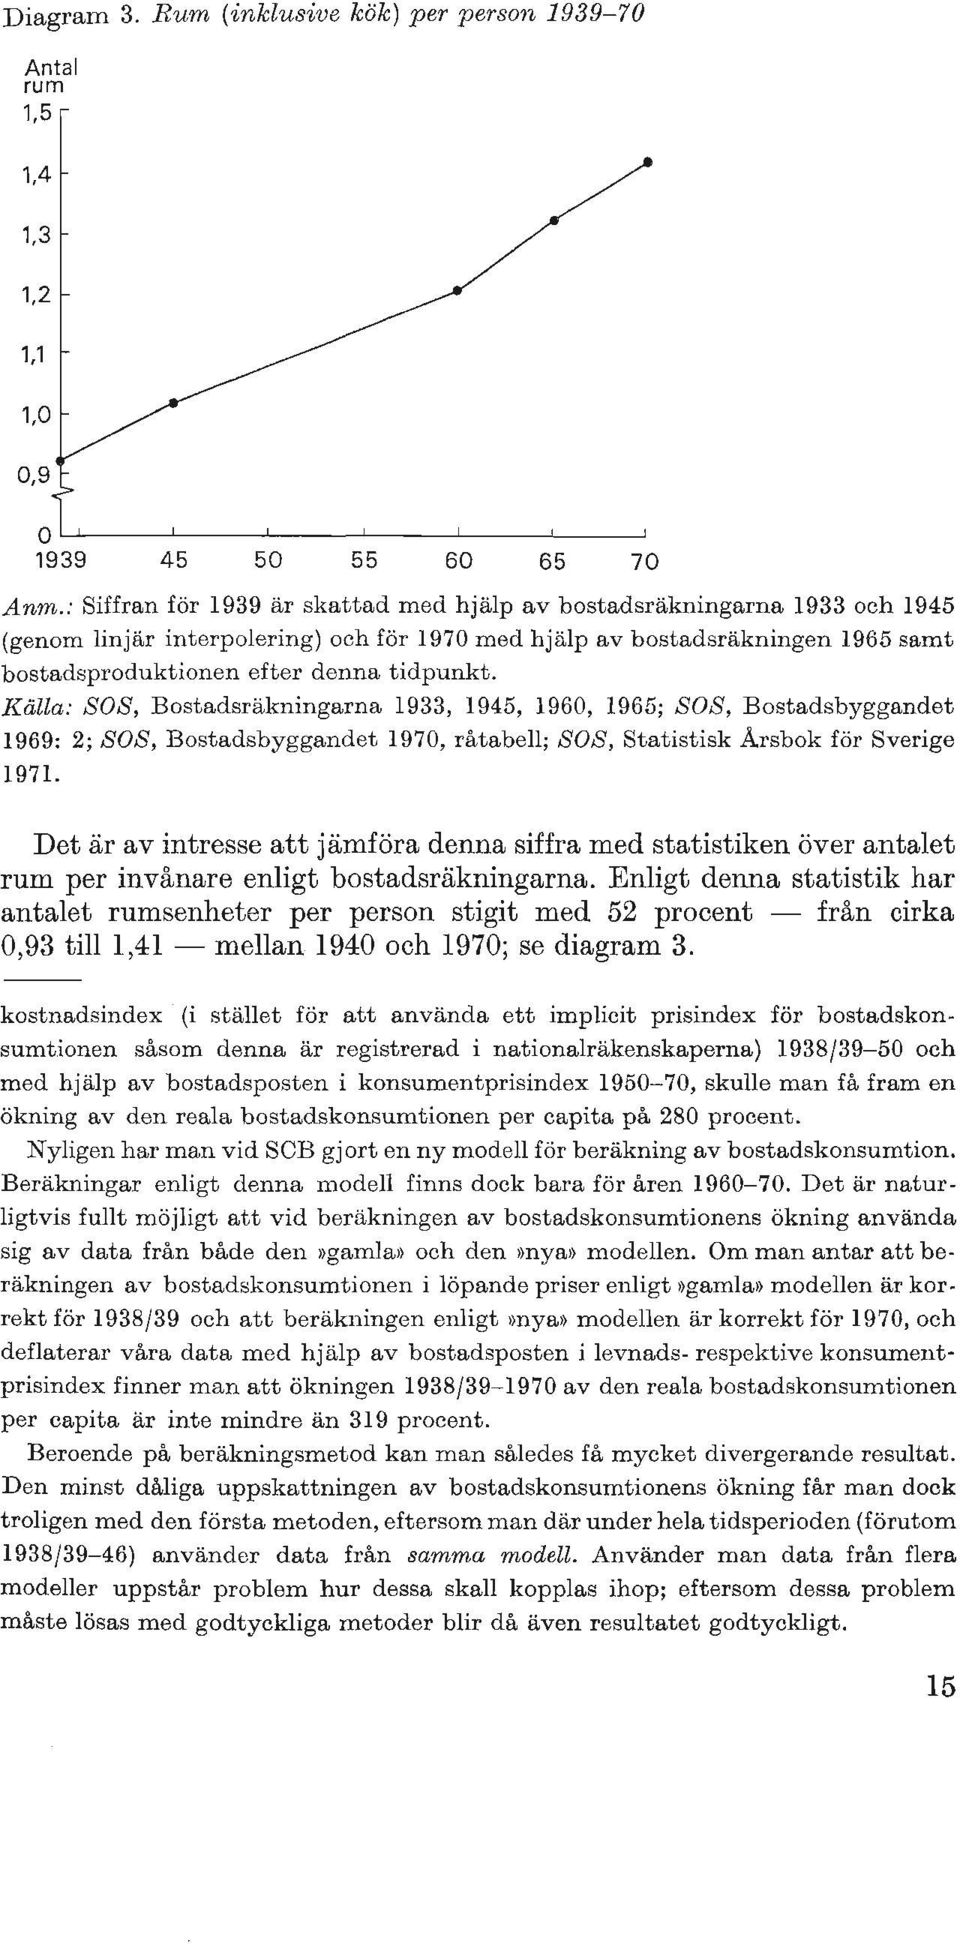 Källa: SOS, Bostadsräkningarna 1933, 1945, 1960, 1965; SOS, Bostadsbyggandet 1969: 2; SOS, Bostadsbyggandet 1970, råtabell; SOS, Statistisk Arsbok för Sverige 1971.